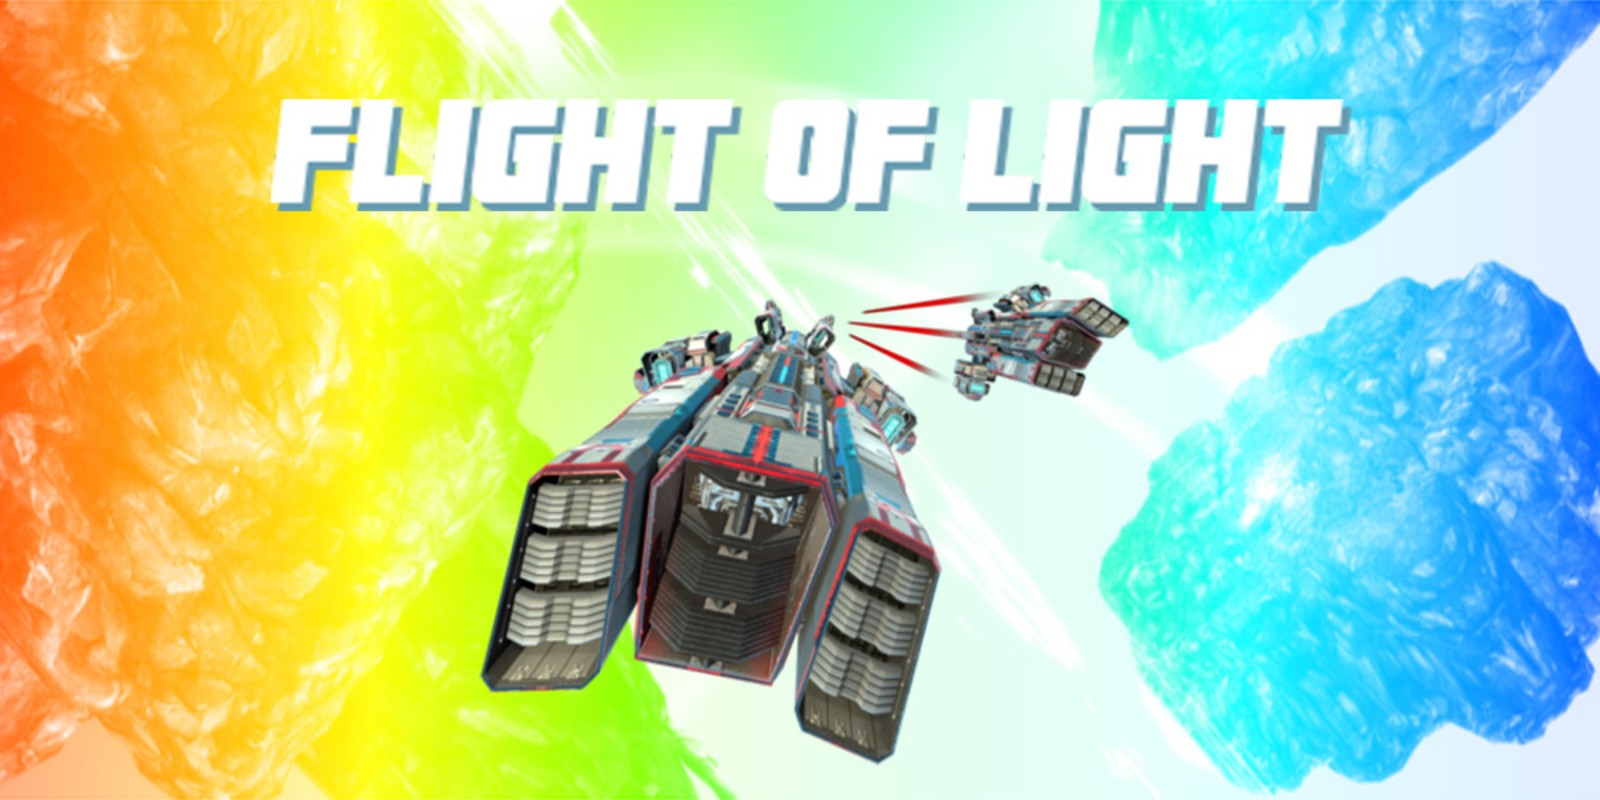 Flight of Light